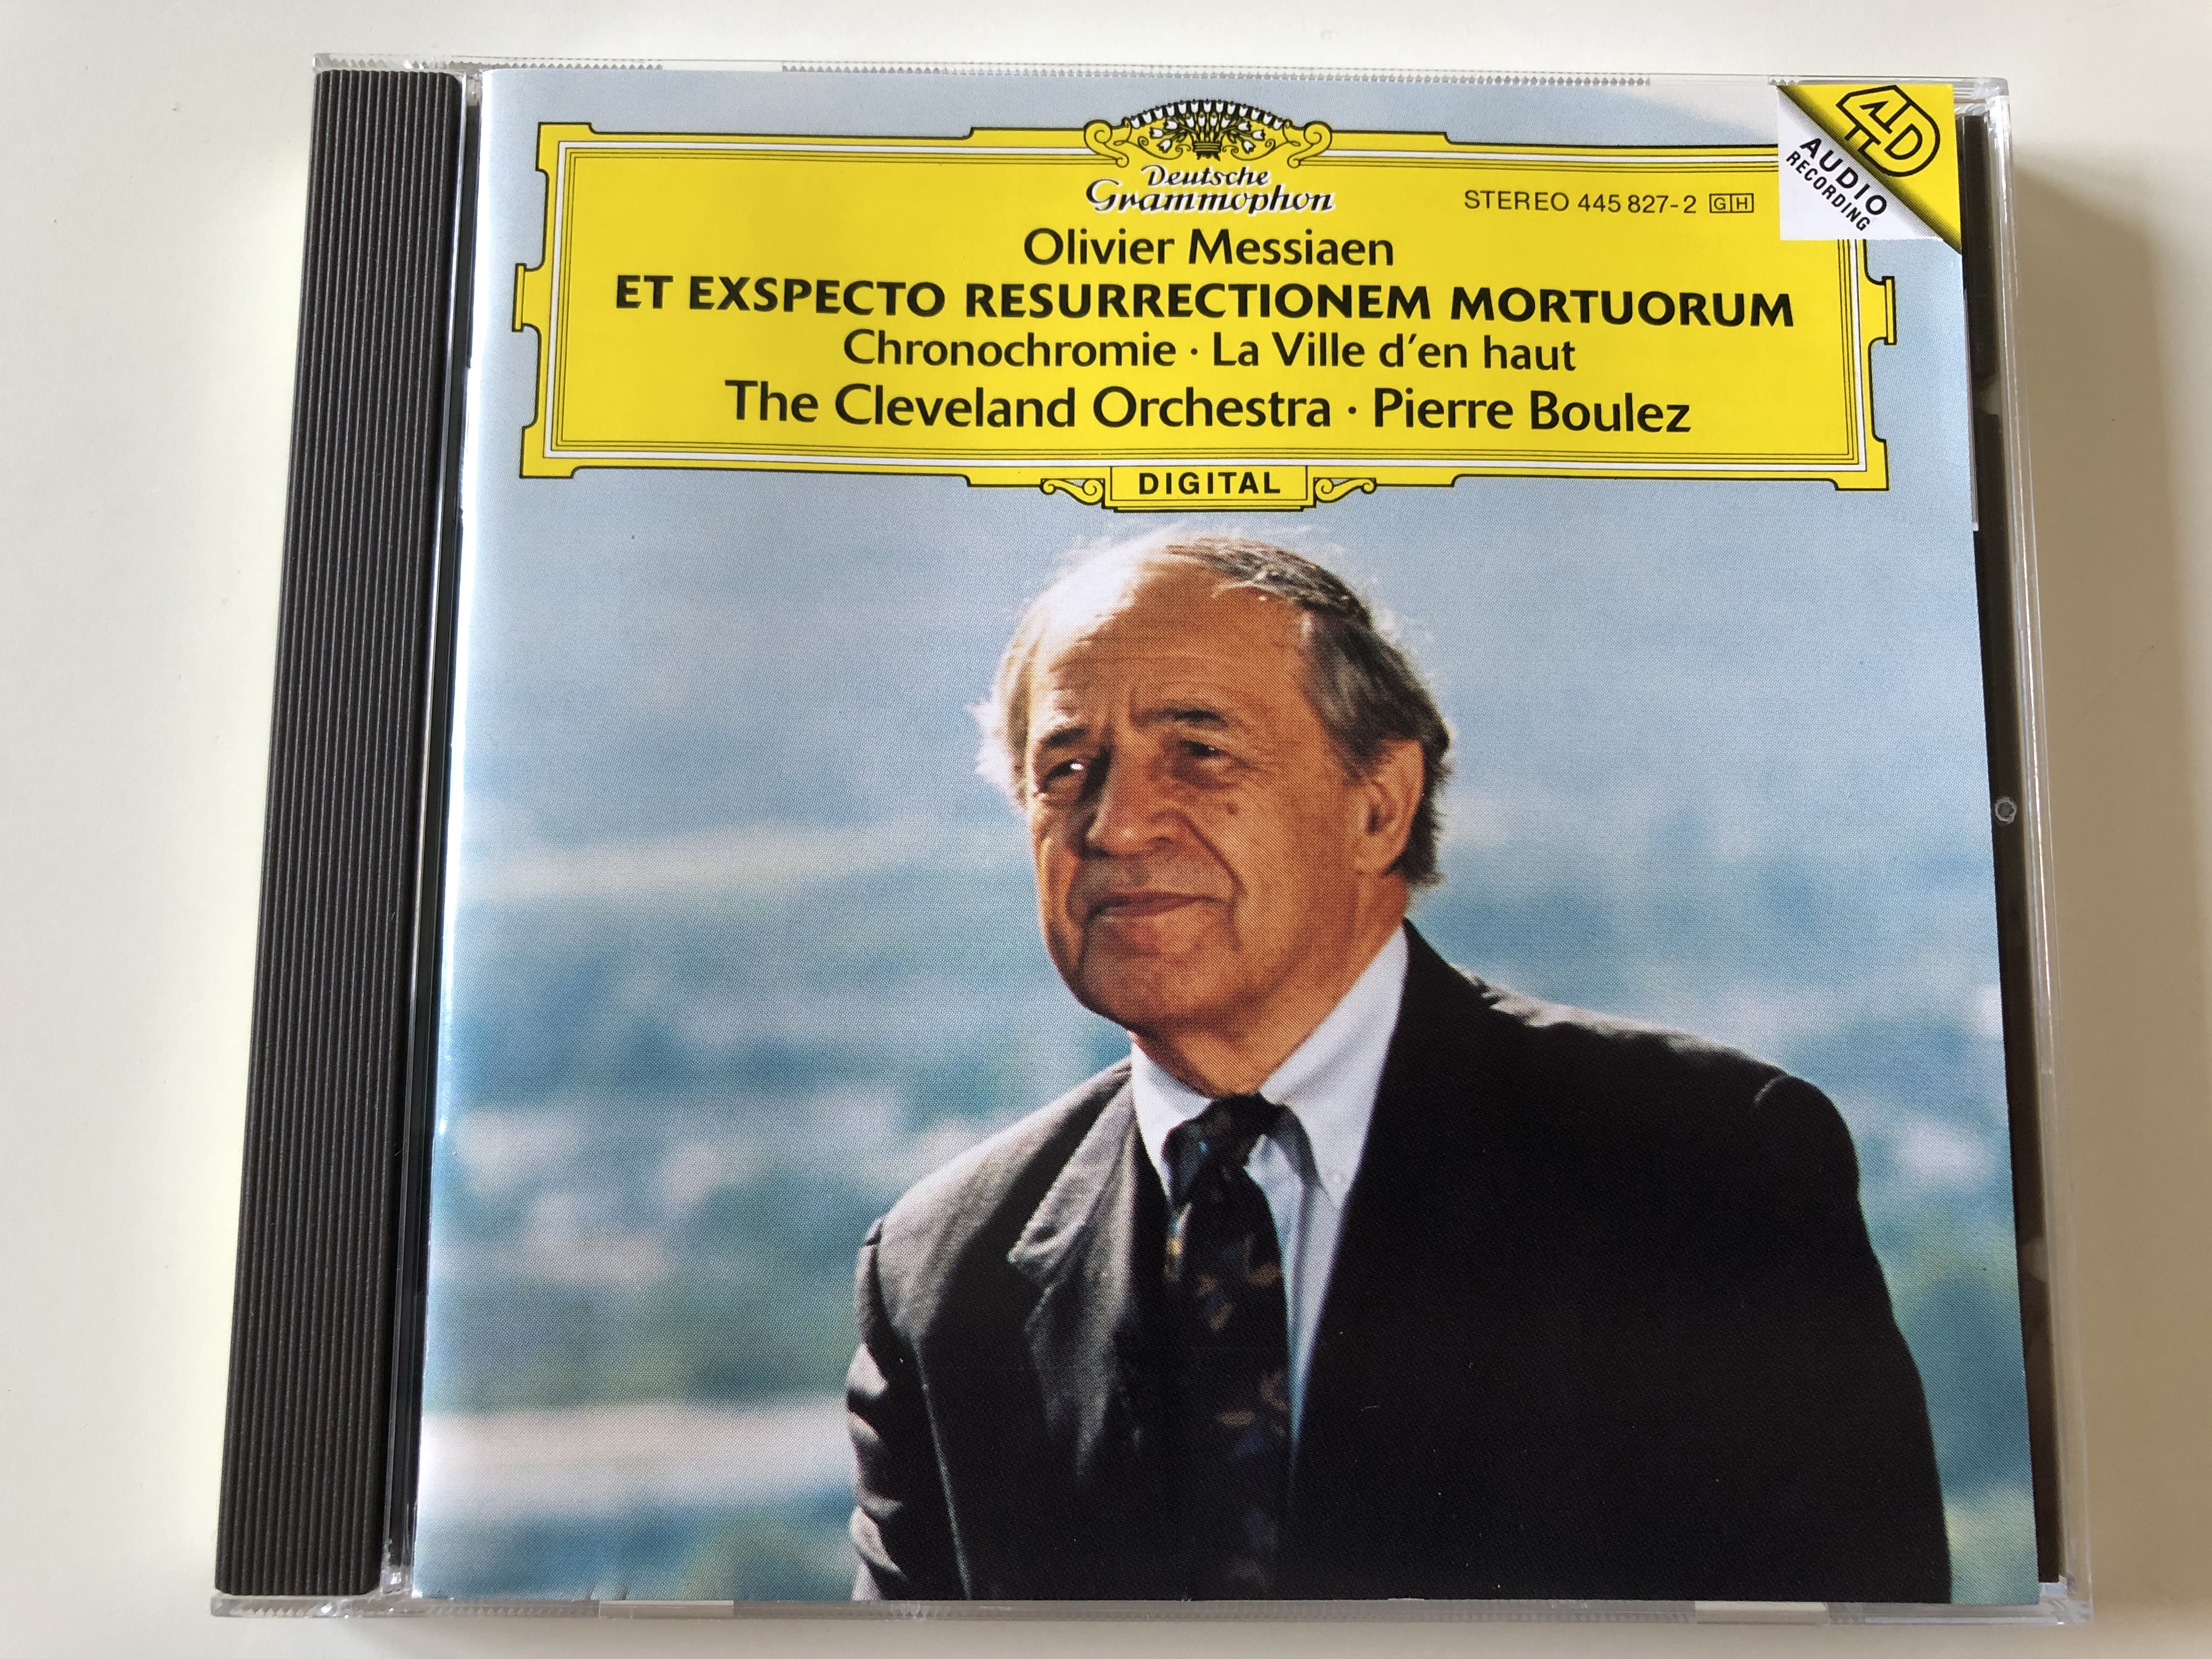 olivier-messiaen-et-exspecto-resurrectionem-mortuorum-chronochromie-la-ville-d-en-haut-the-cleveland-orchestra-pierre-boulez-deutsche-grammophon-audio-cd-1995-stereo-445-827-2-1-.jpg